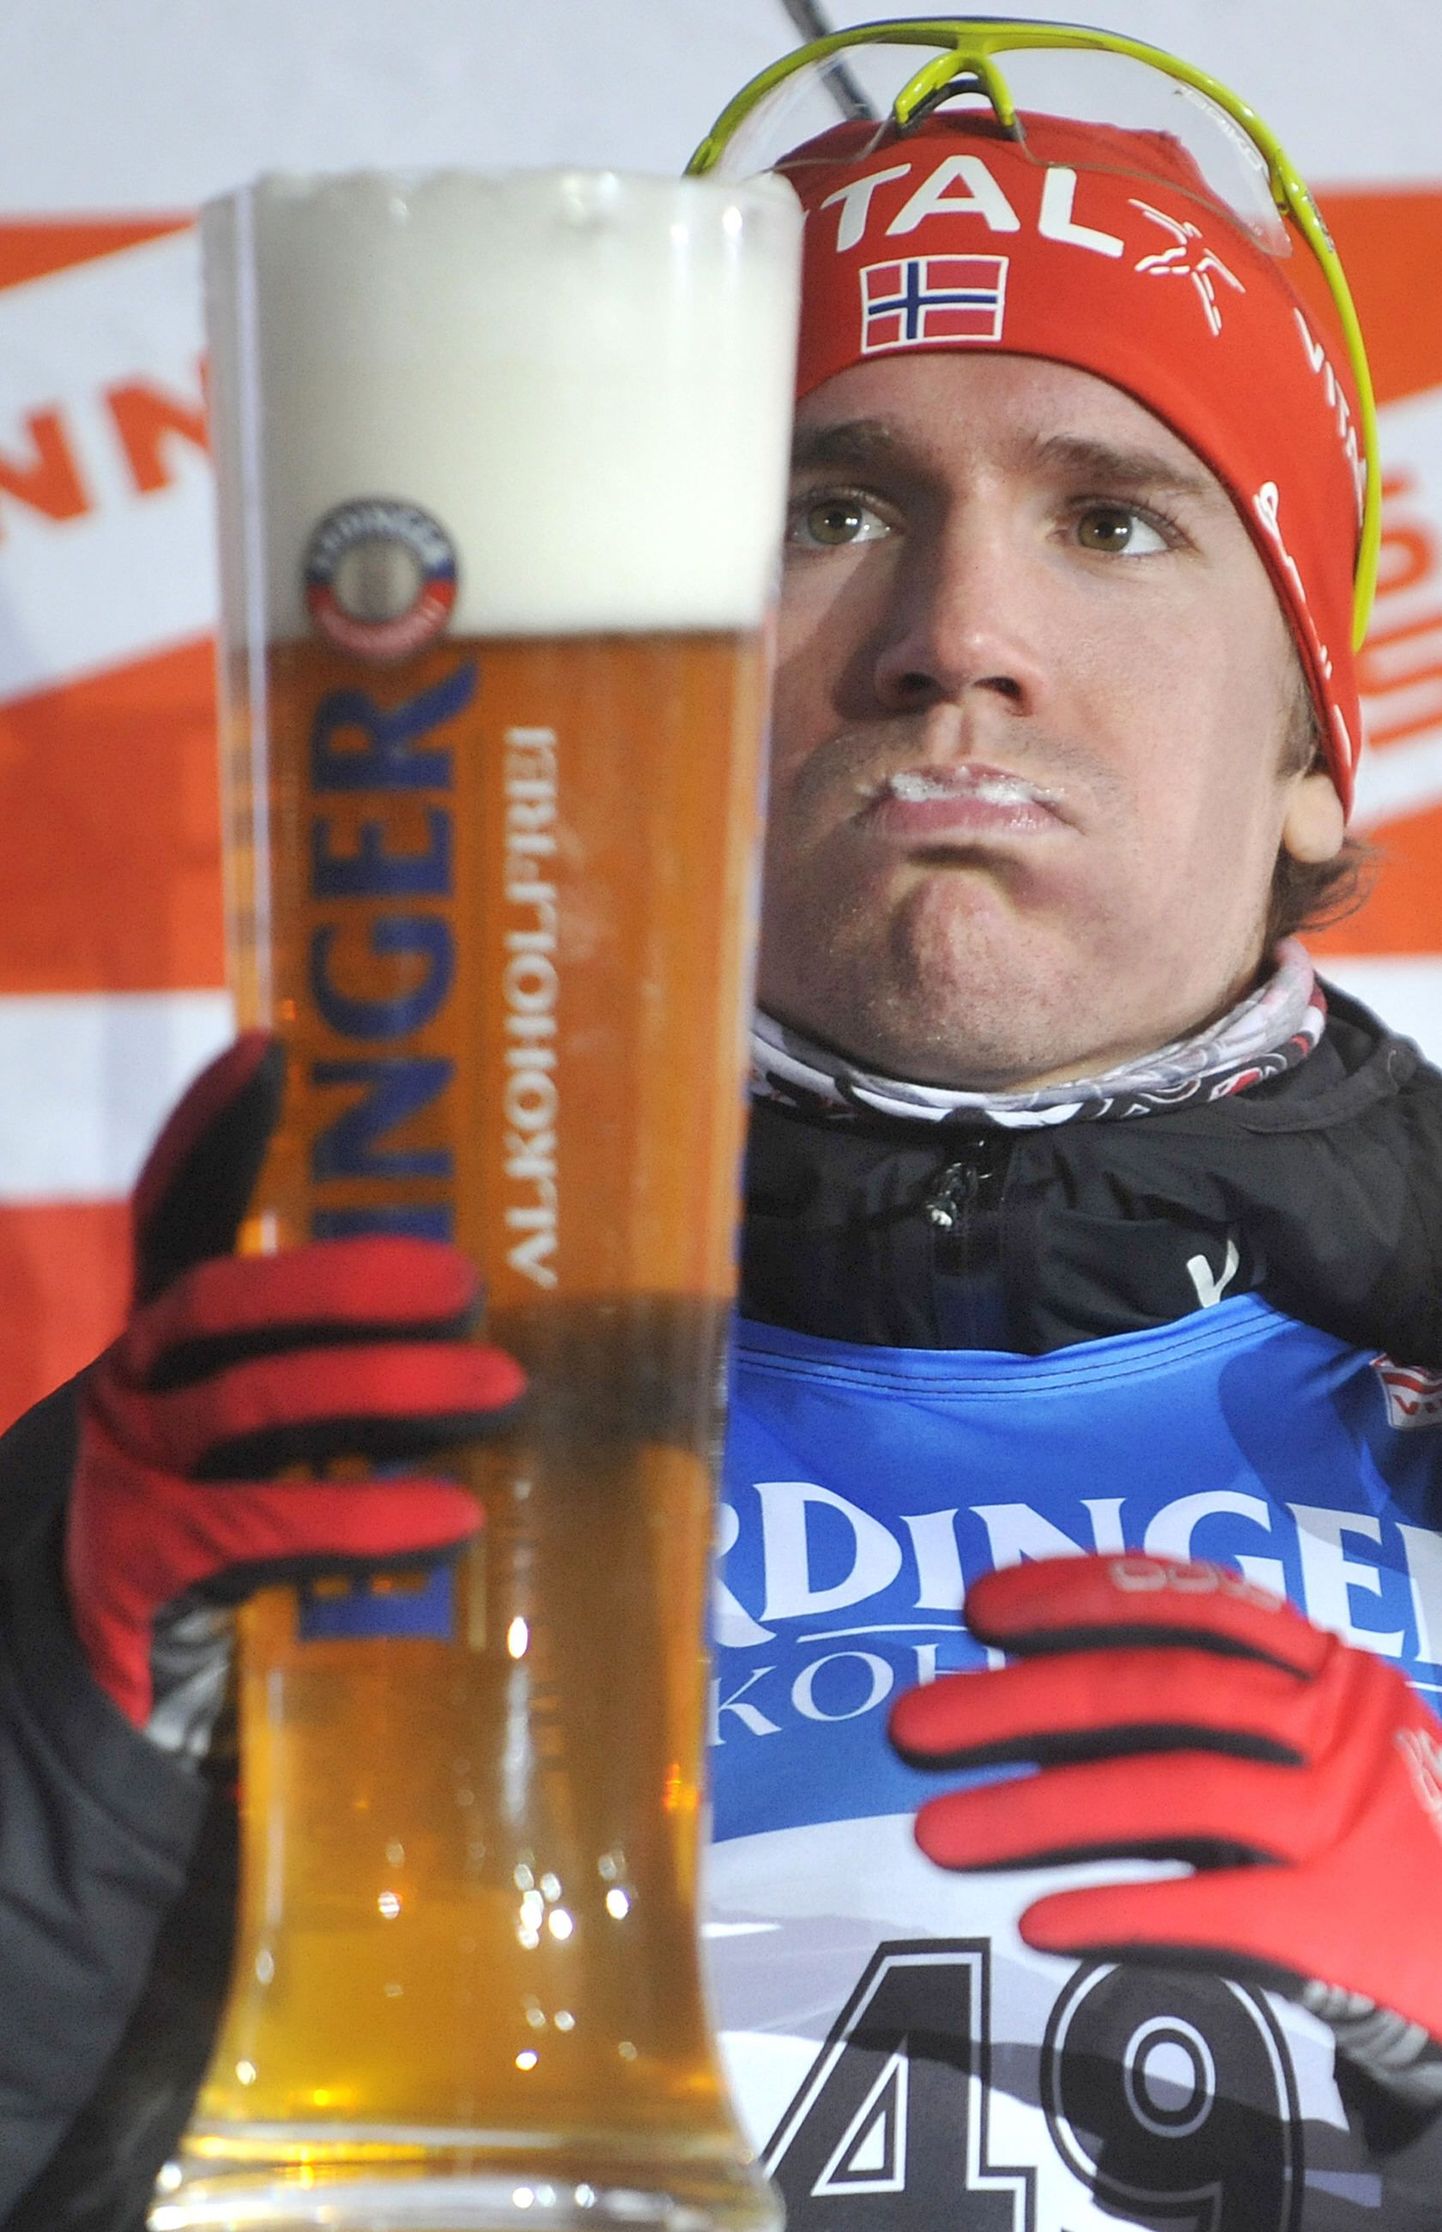 Laskesuusatamise valitud MK-etappidel saavad esikolmikusse jõudnud sportlased poodiumil Erdingeri alkoholivaba õlut mekkida. Pildil on huuled vahuseks teinud norralane Emil Hegle Svendsen.